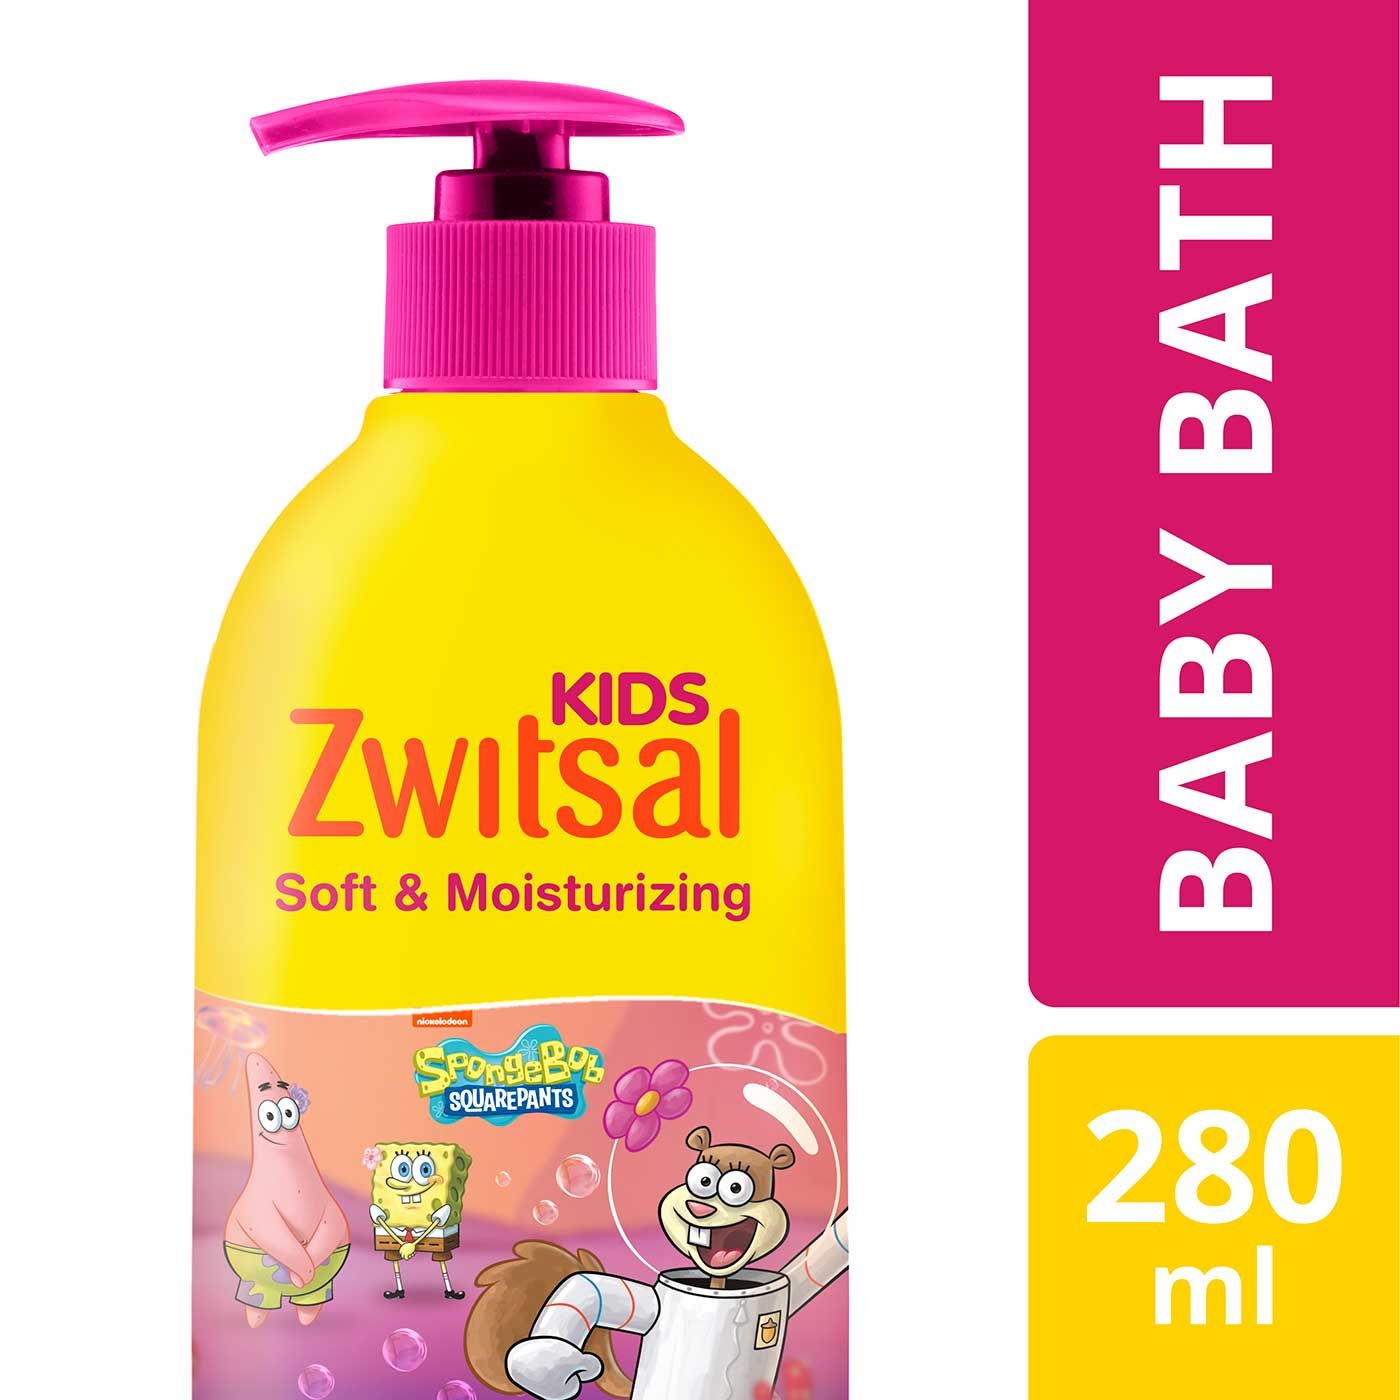 Zwitsal Kids Bubble Bath Pink Soft & Moisturizing 280ml - 2